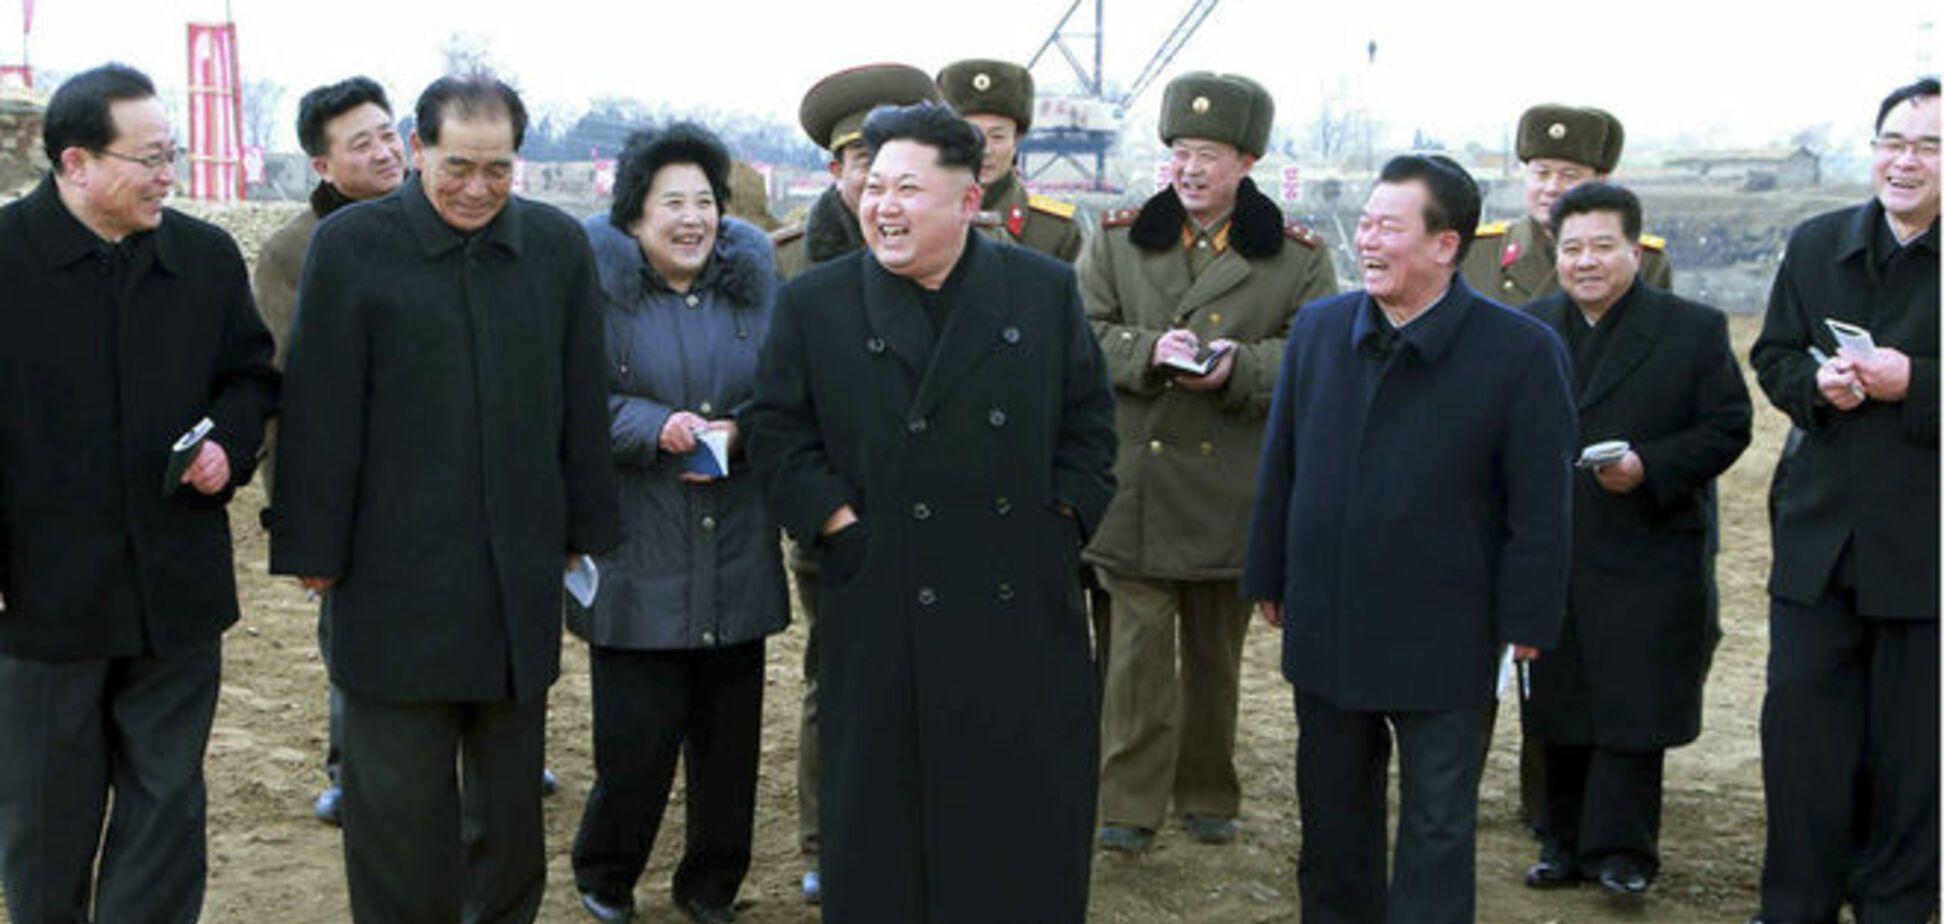 СМИ рассказали о дальнейшей судьбе участников групповых фото с Ким Чен Ыном